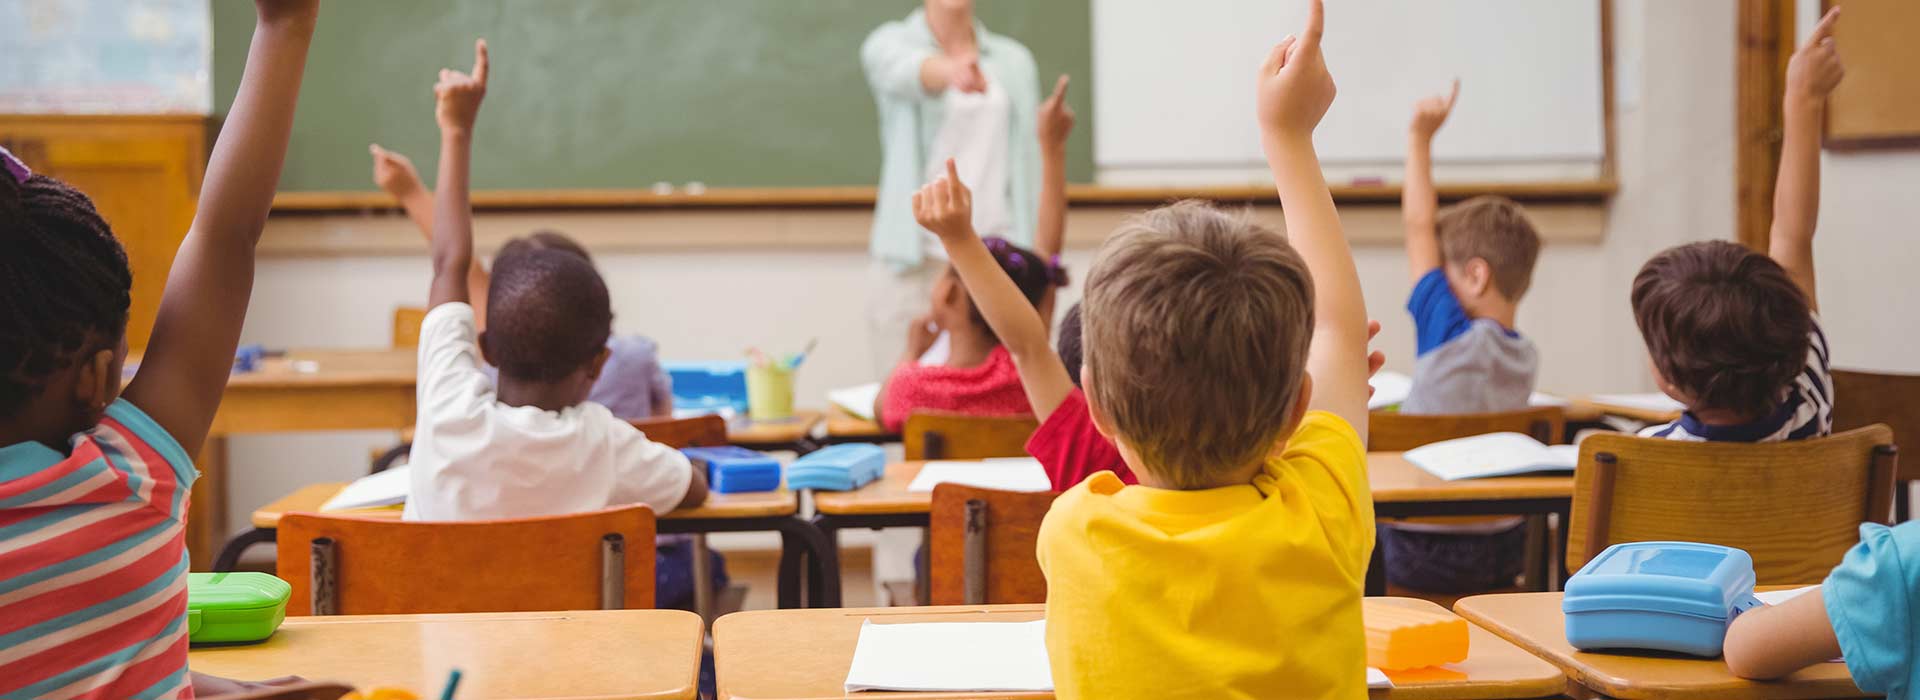 Vista de trás de crianças sentadas em uma sala de aula com as mãos levantadas.